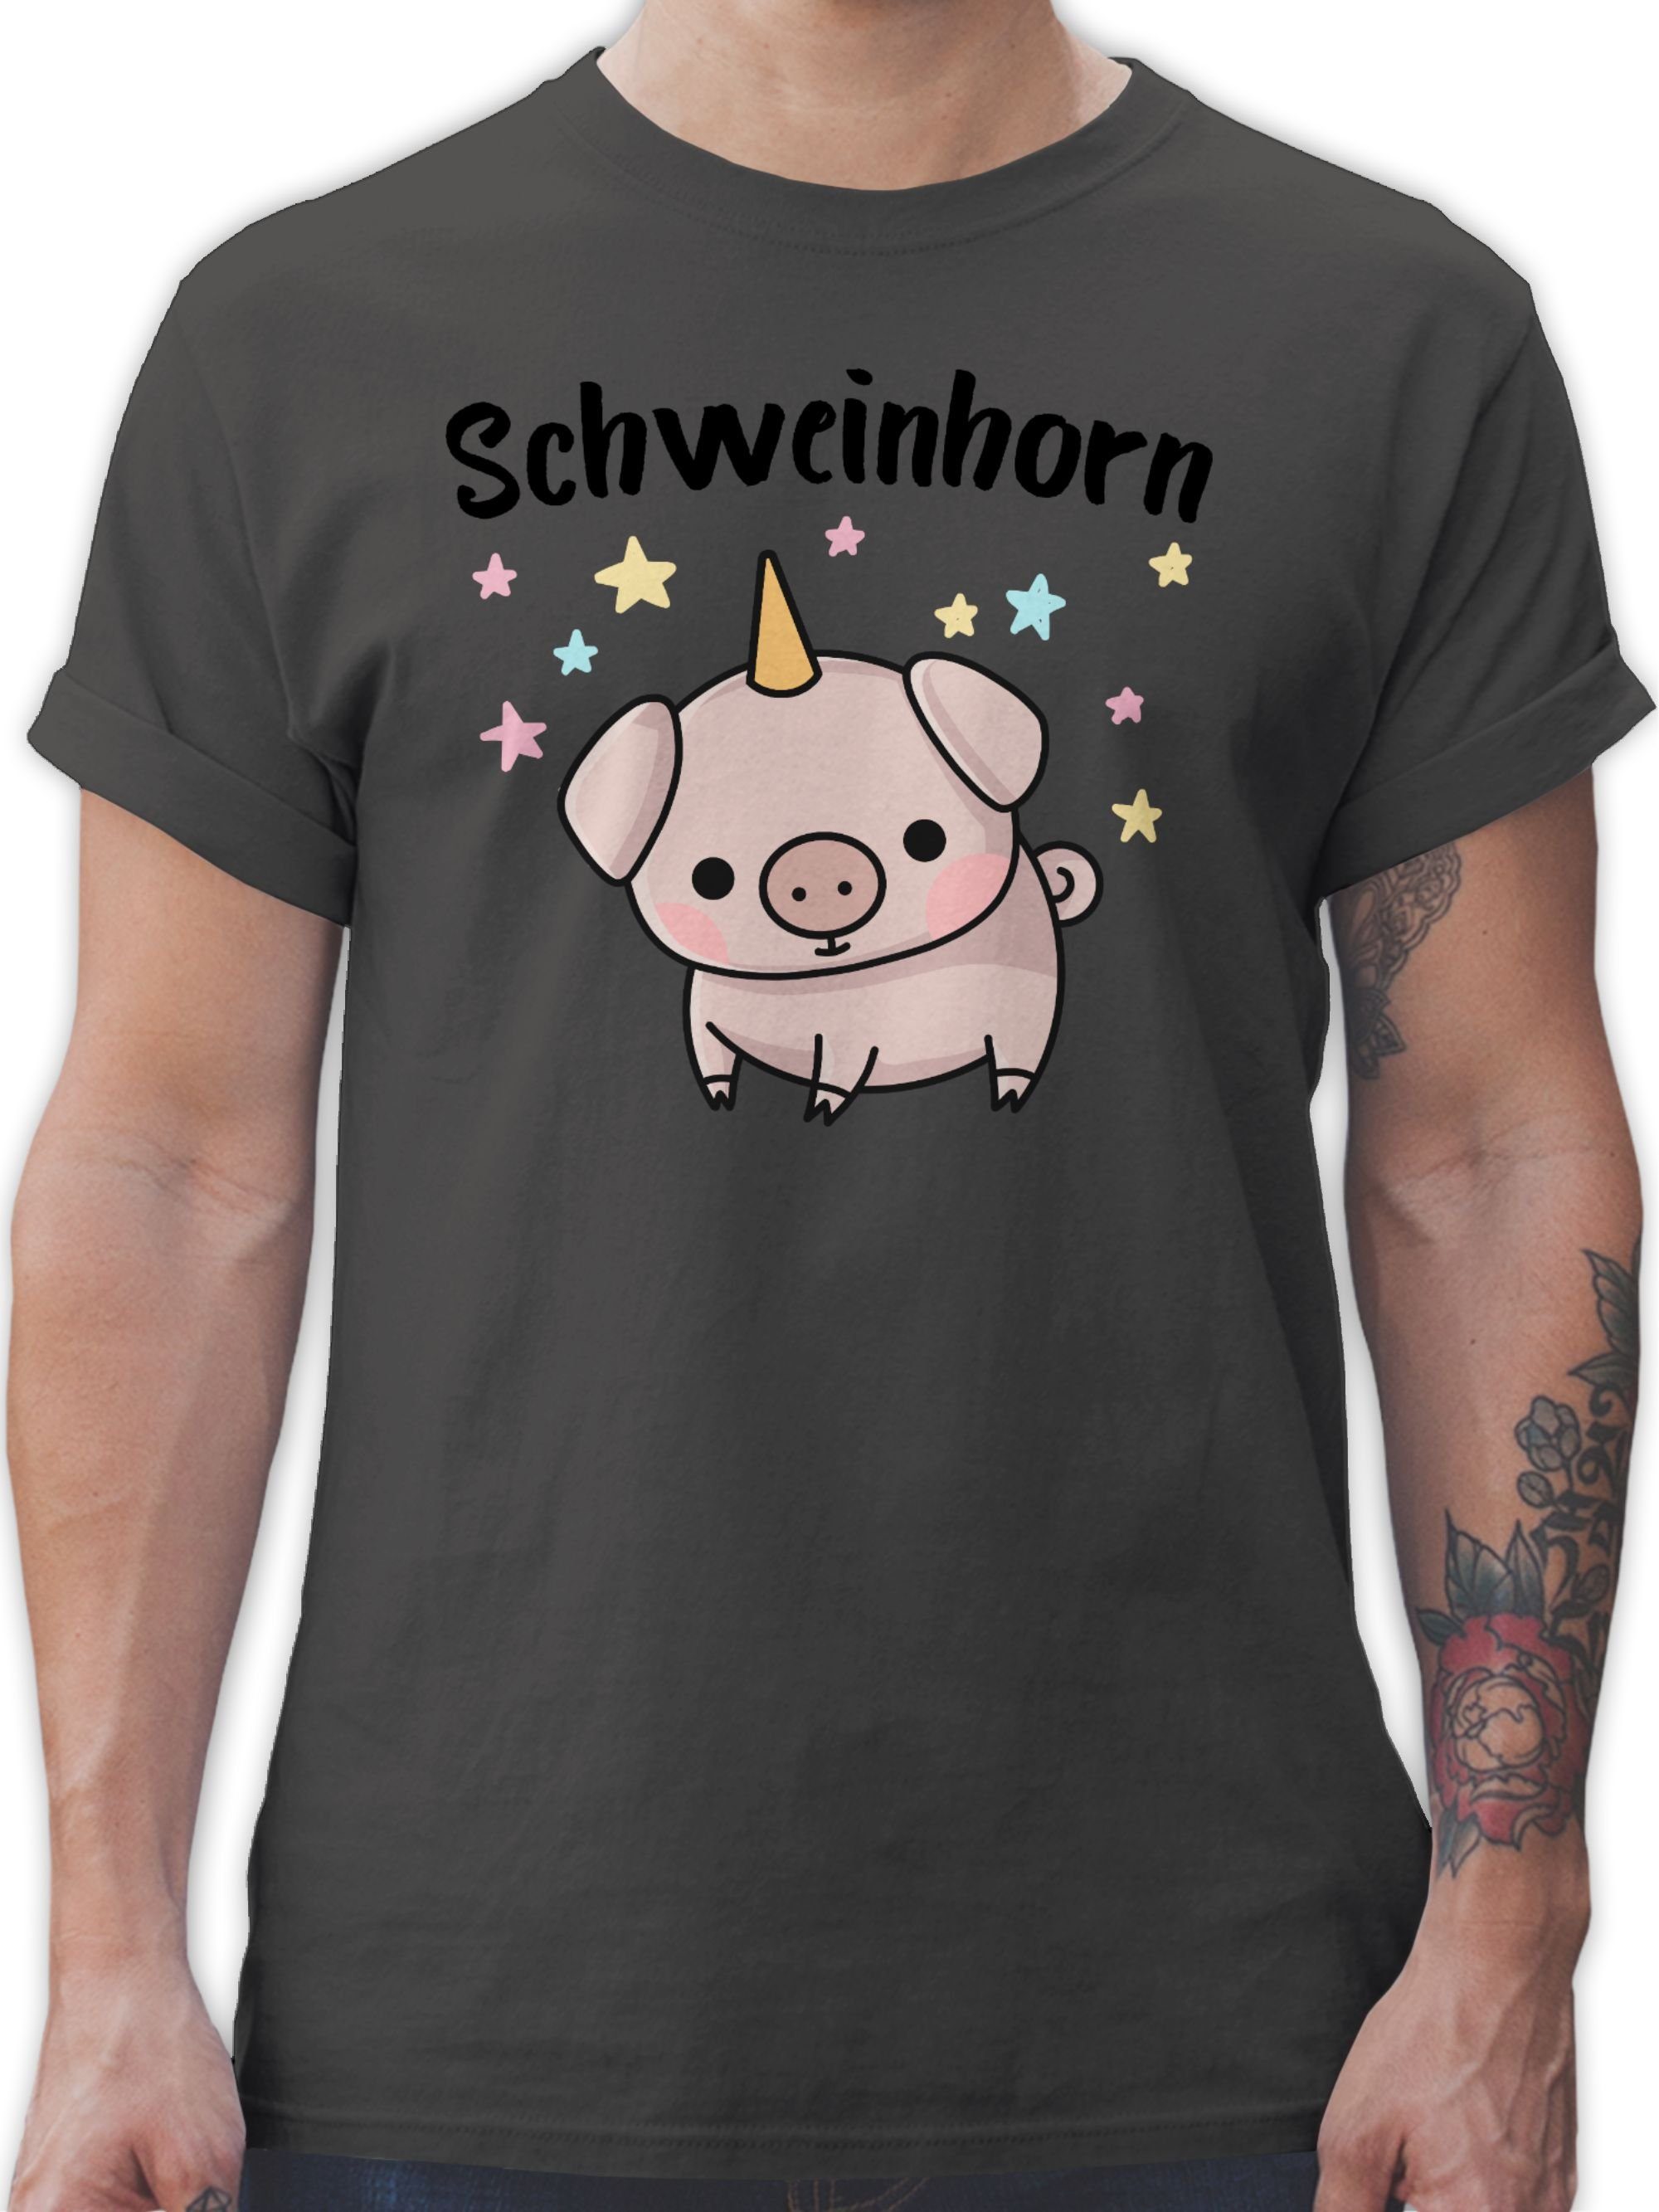 Shirtracer T-Shirt Schweinhorn Karneval Outfit 1 Dunkelgrau | T-Shirts